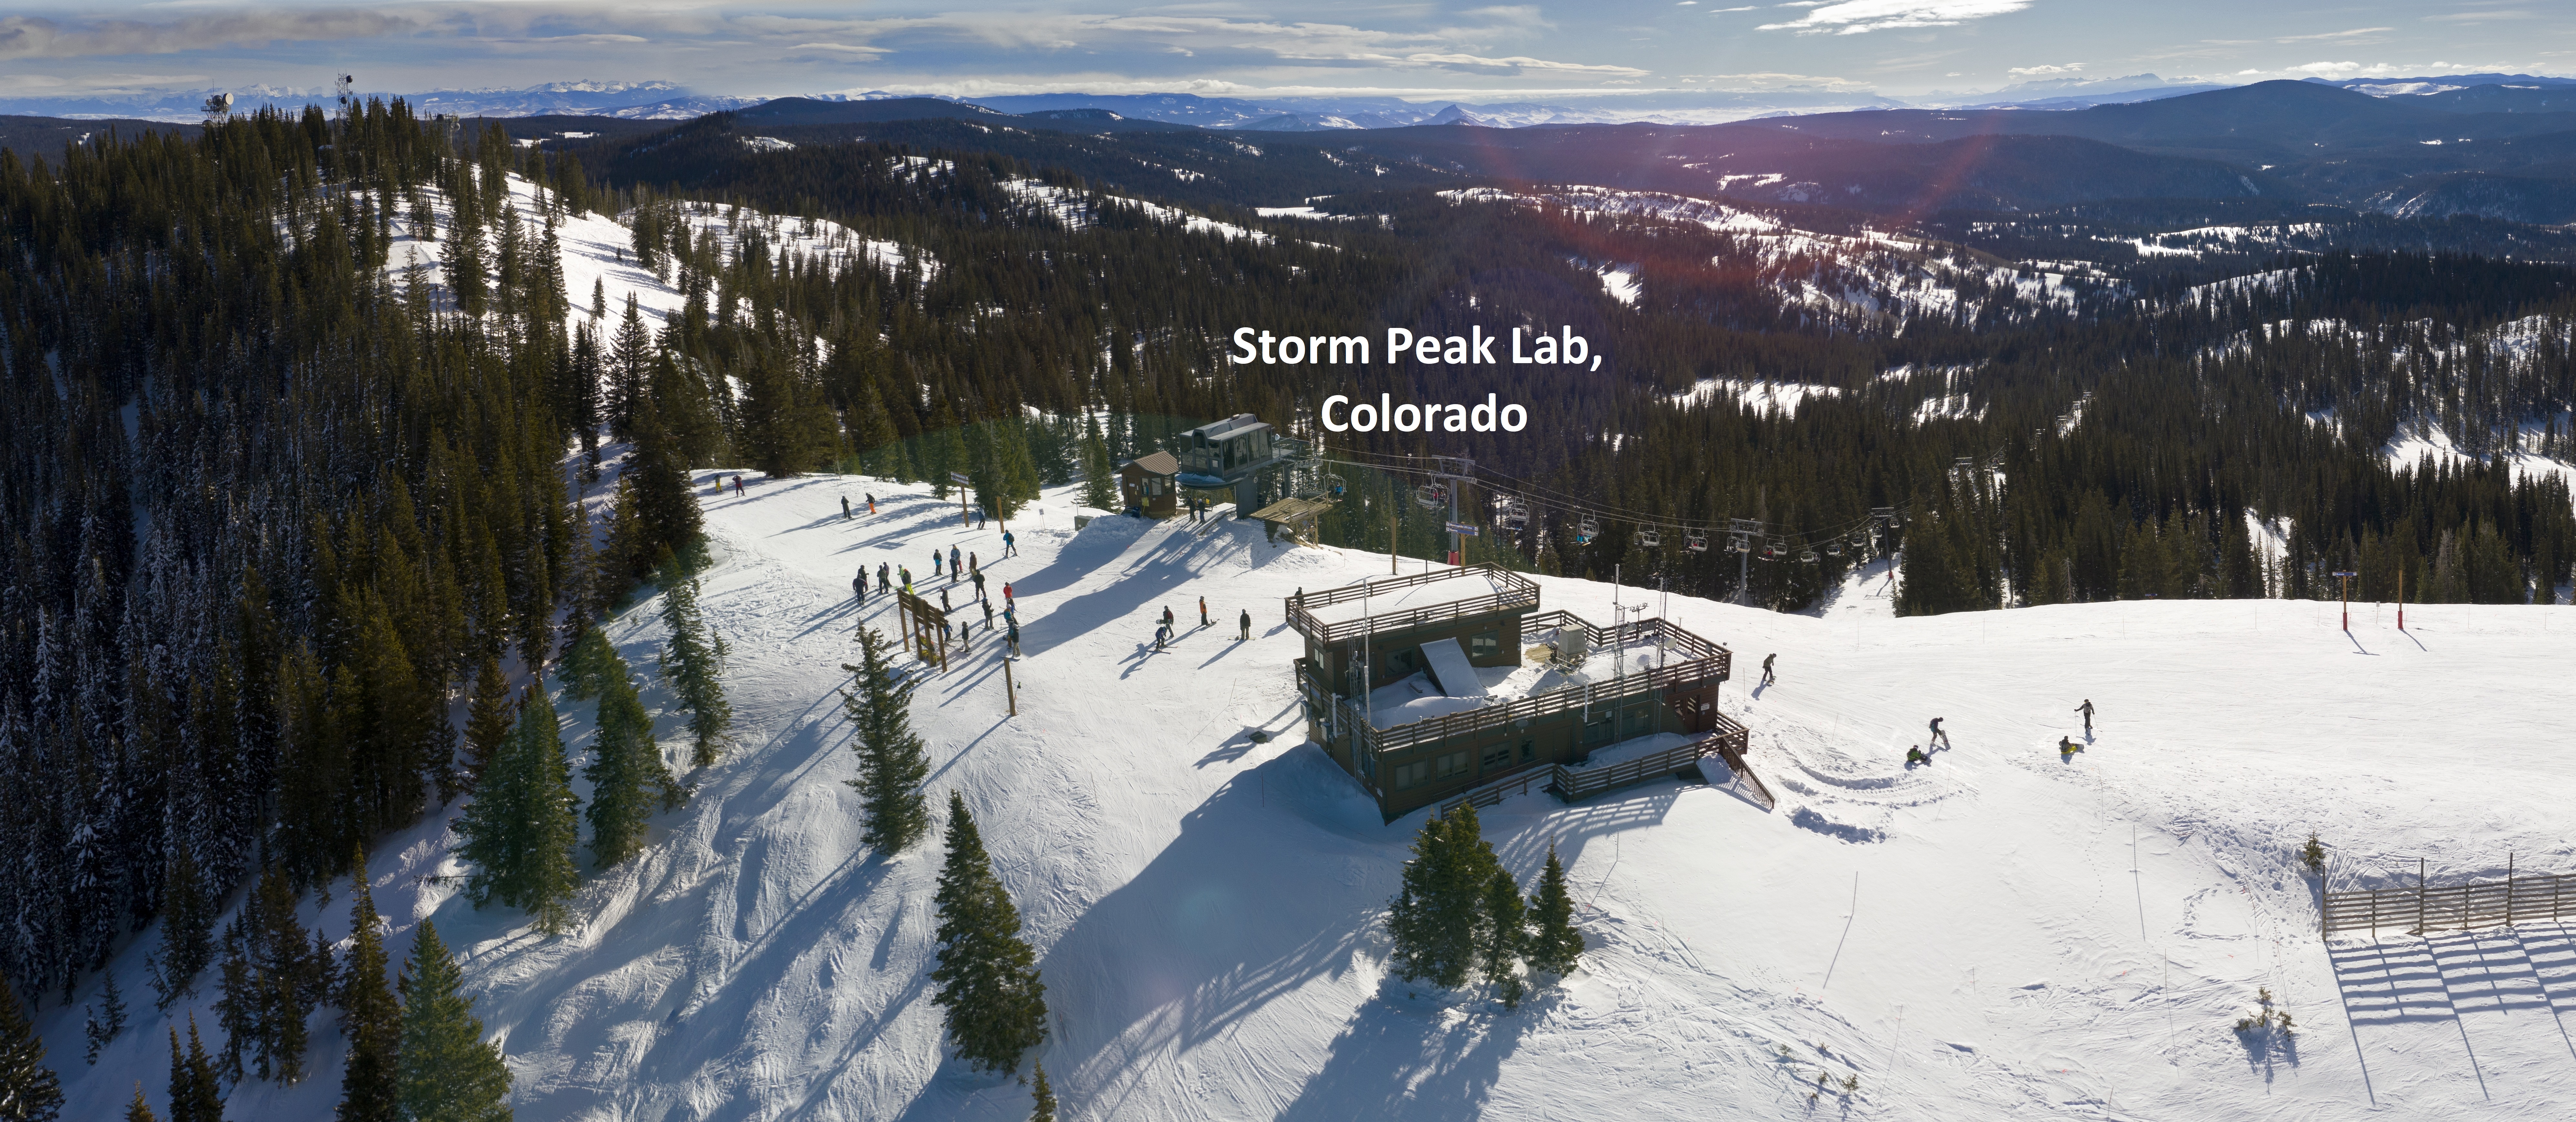 Storm Peak Lab